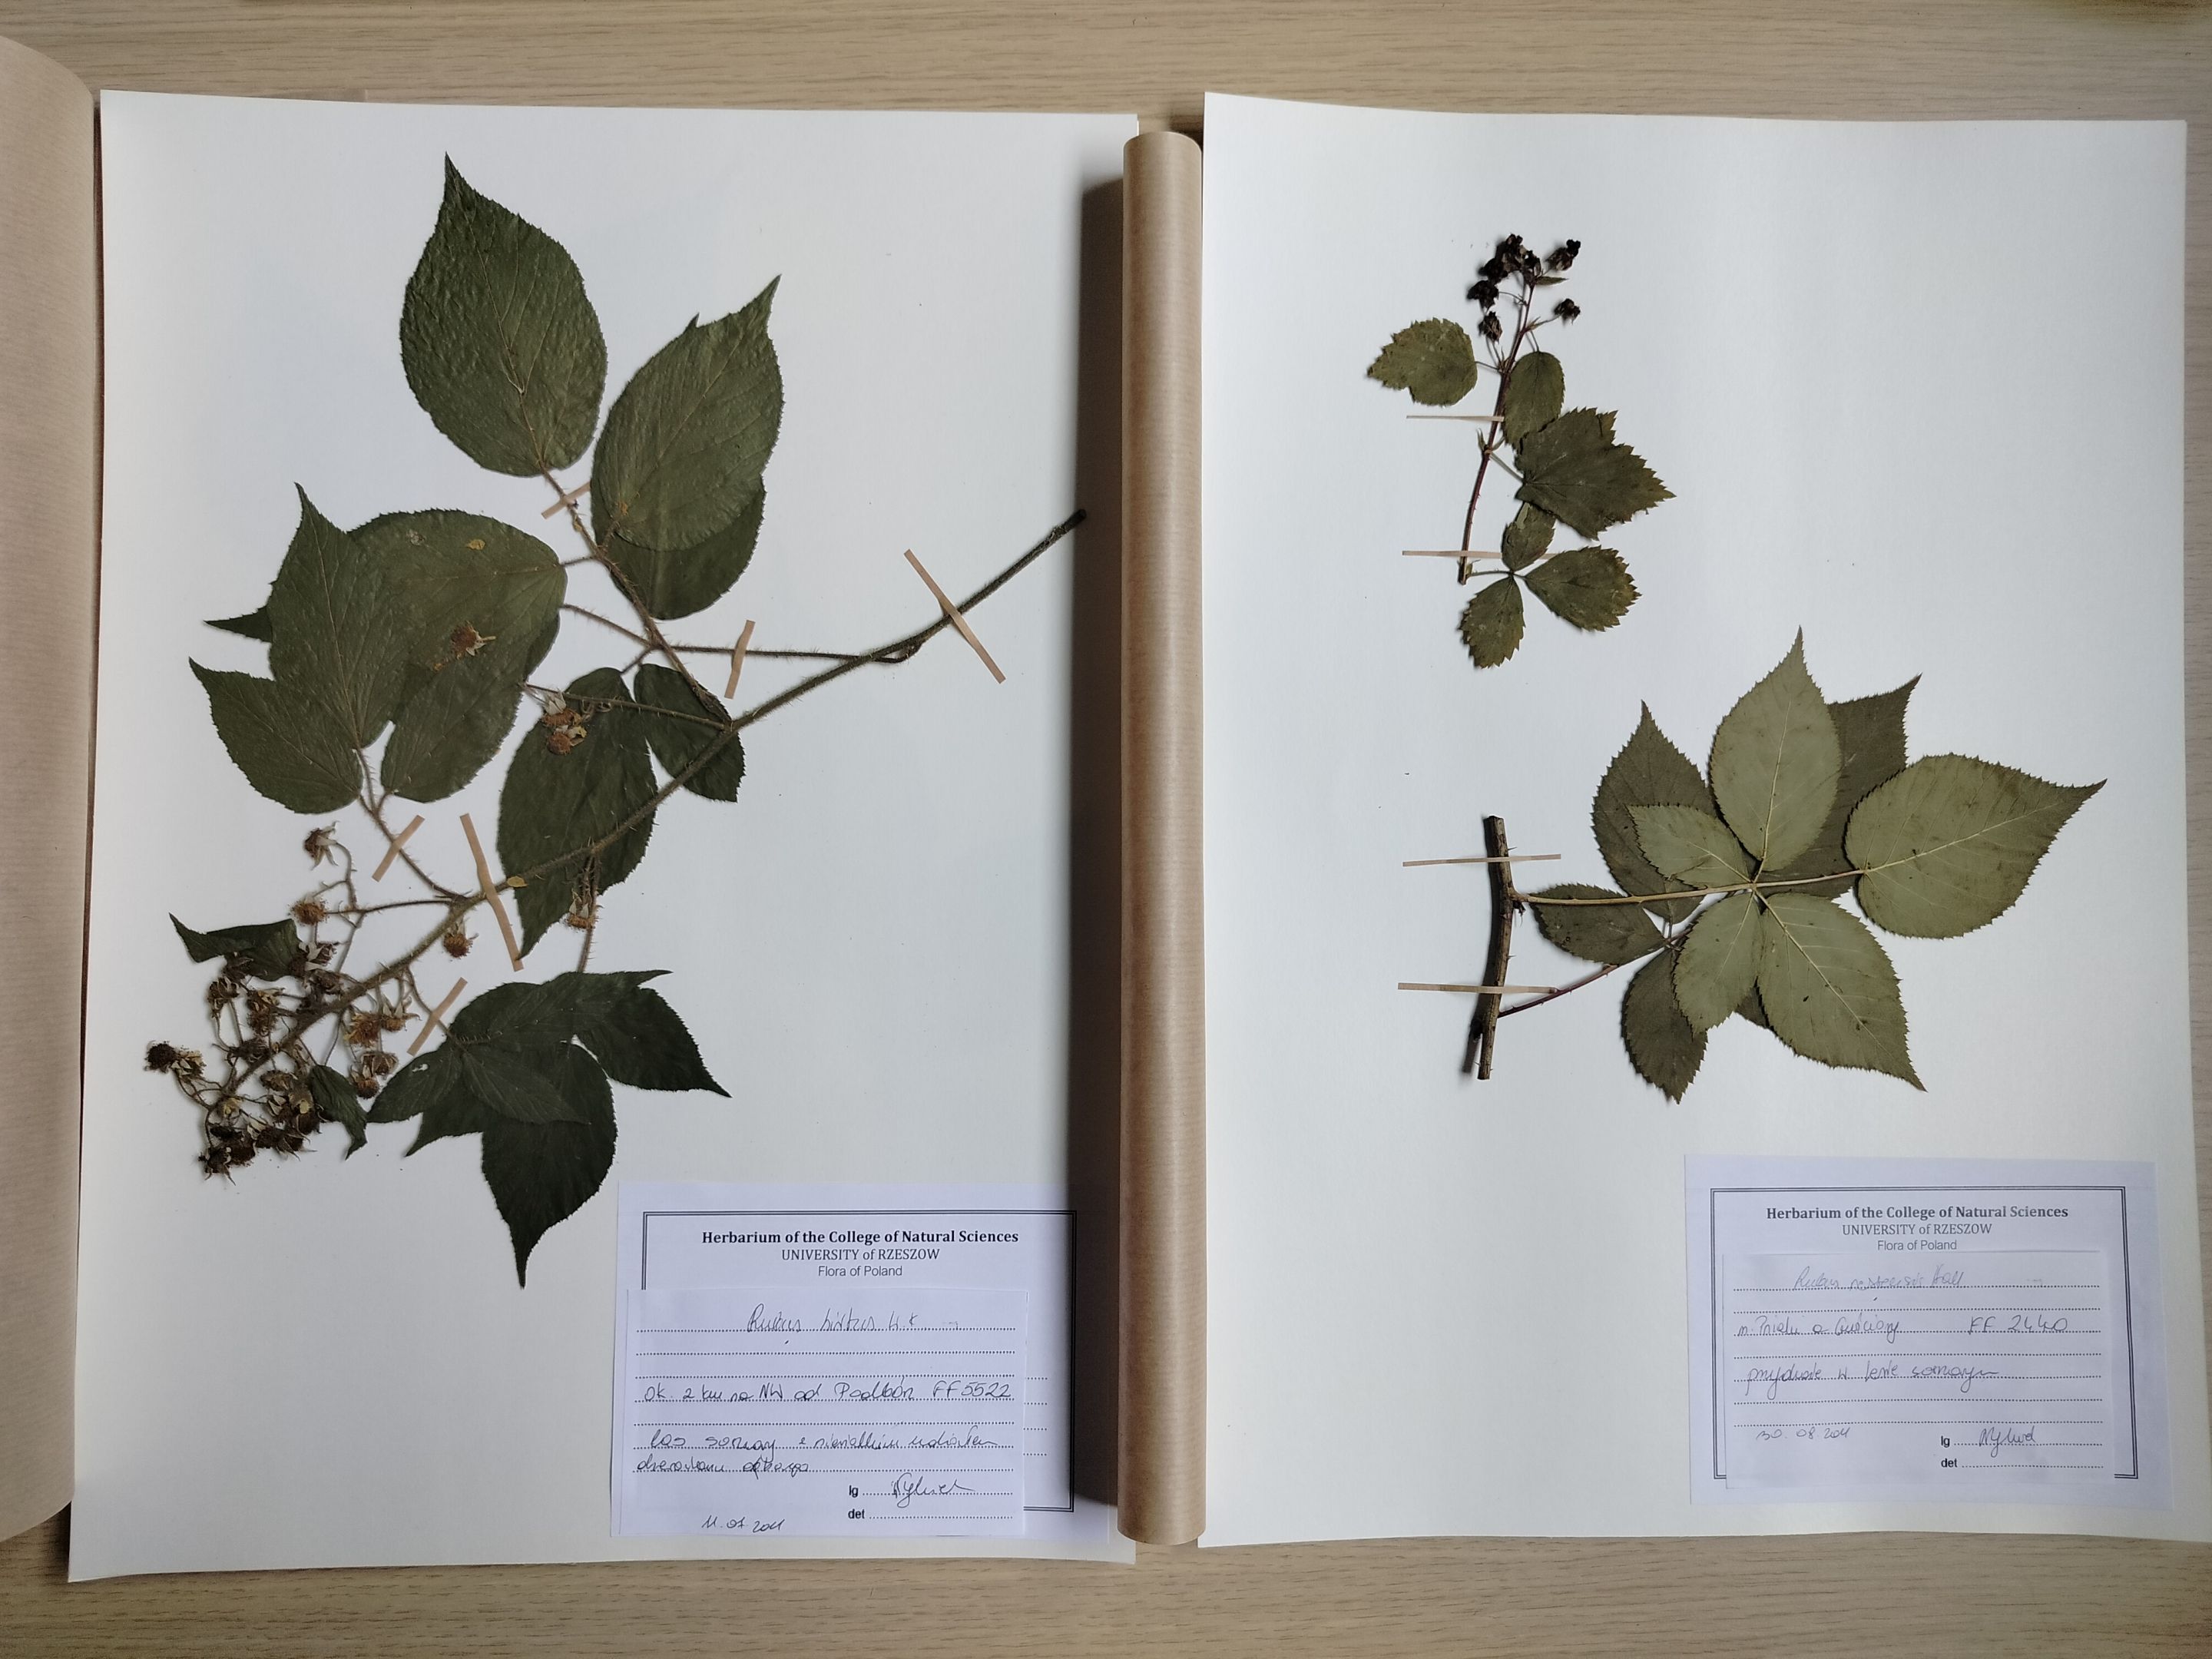 Obraz przedstawia zdjęcia roślin przygotowanych jako element herbarium